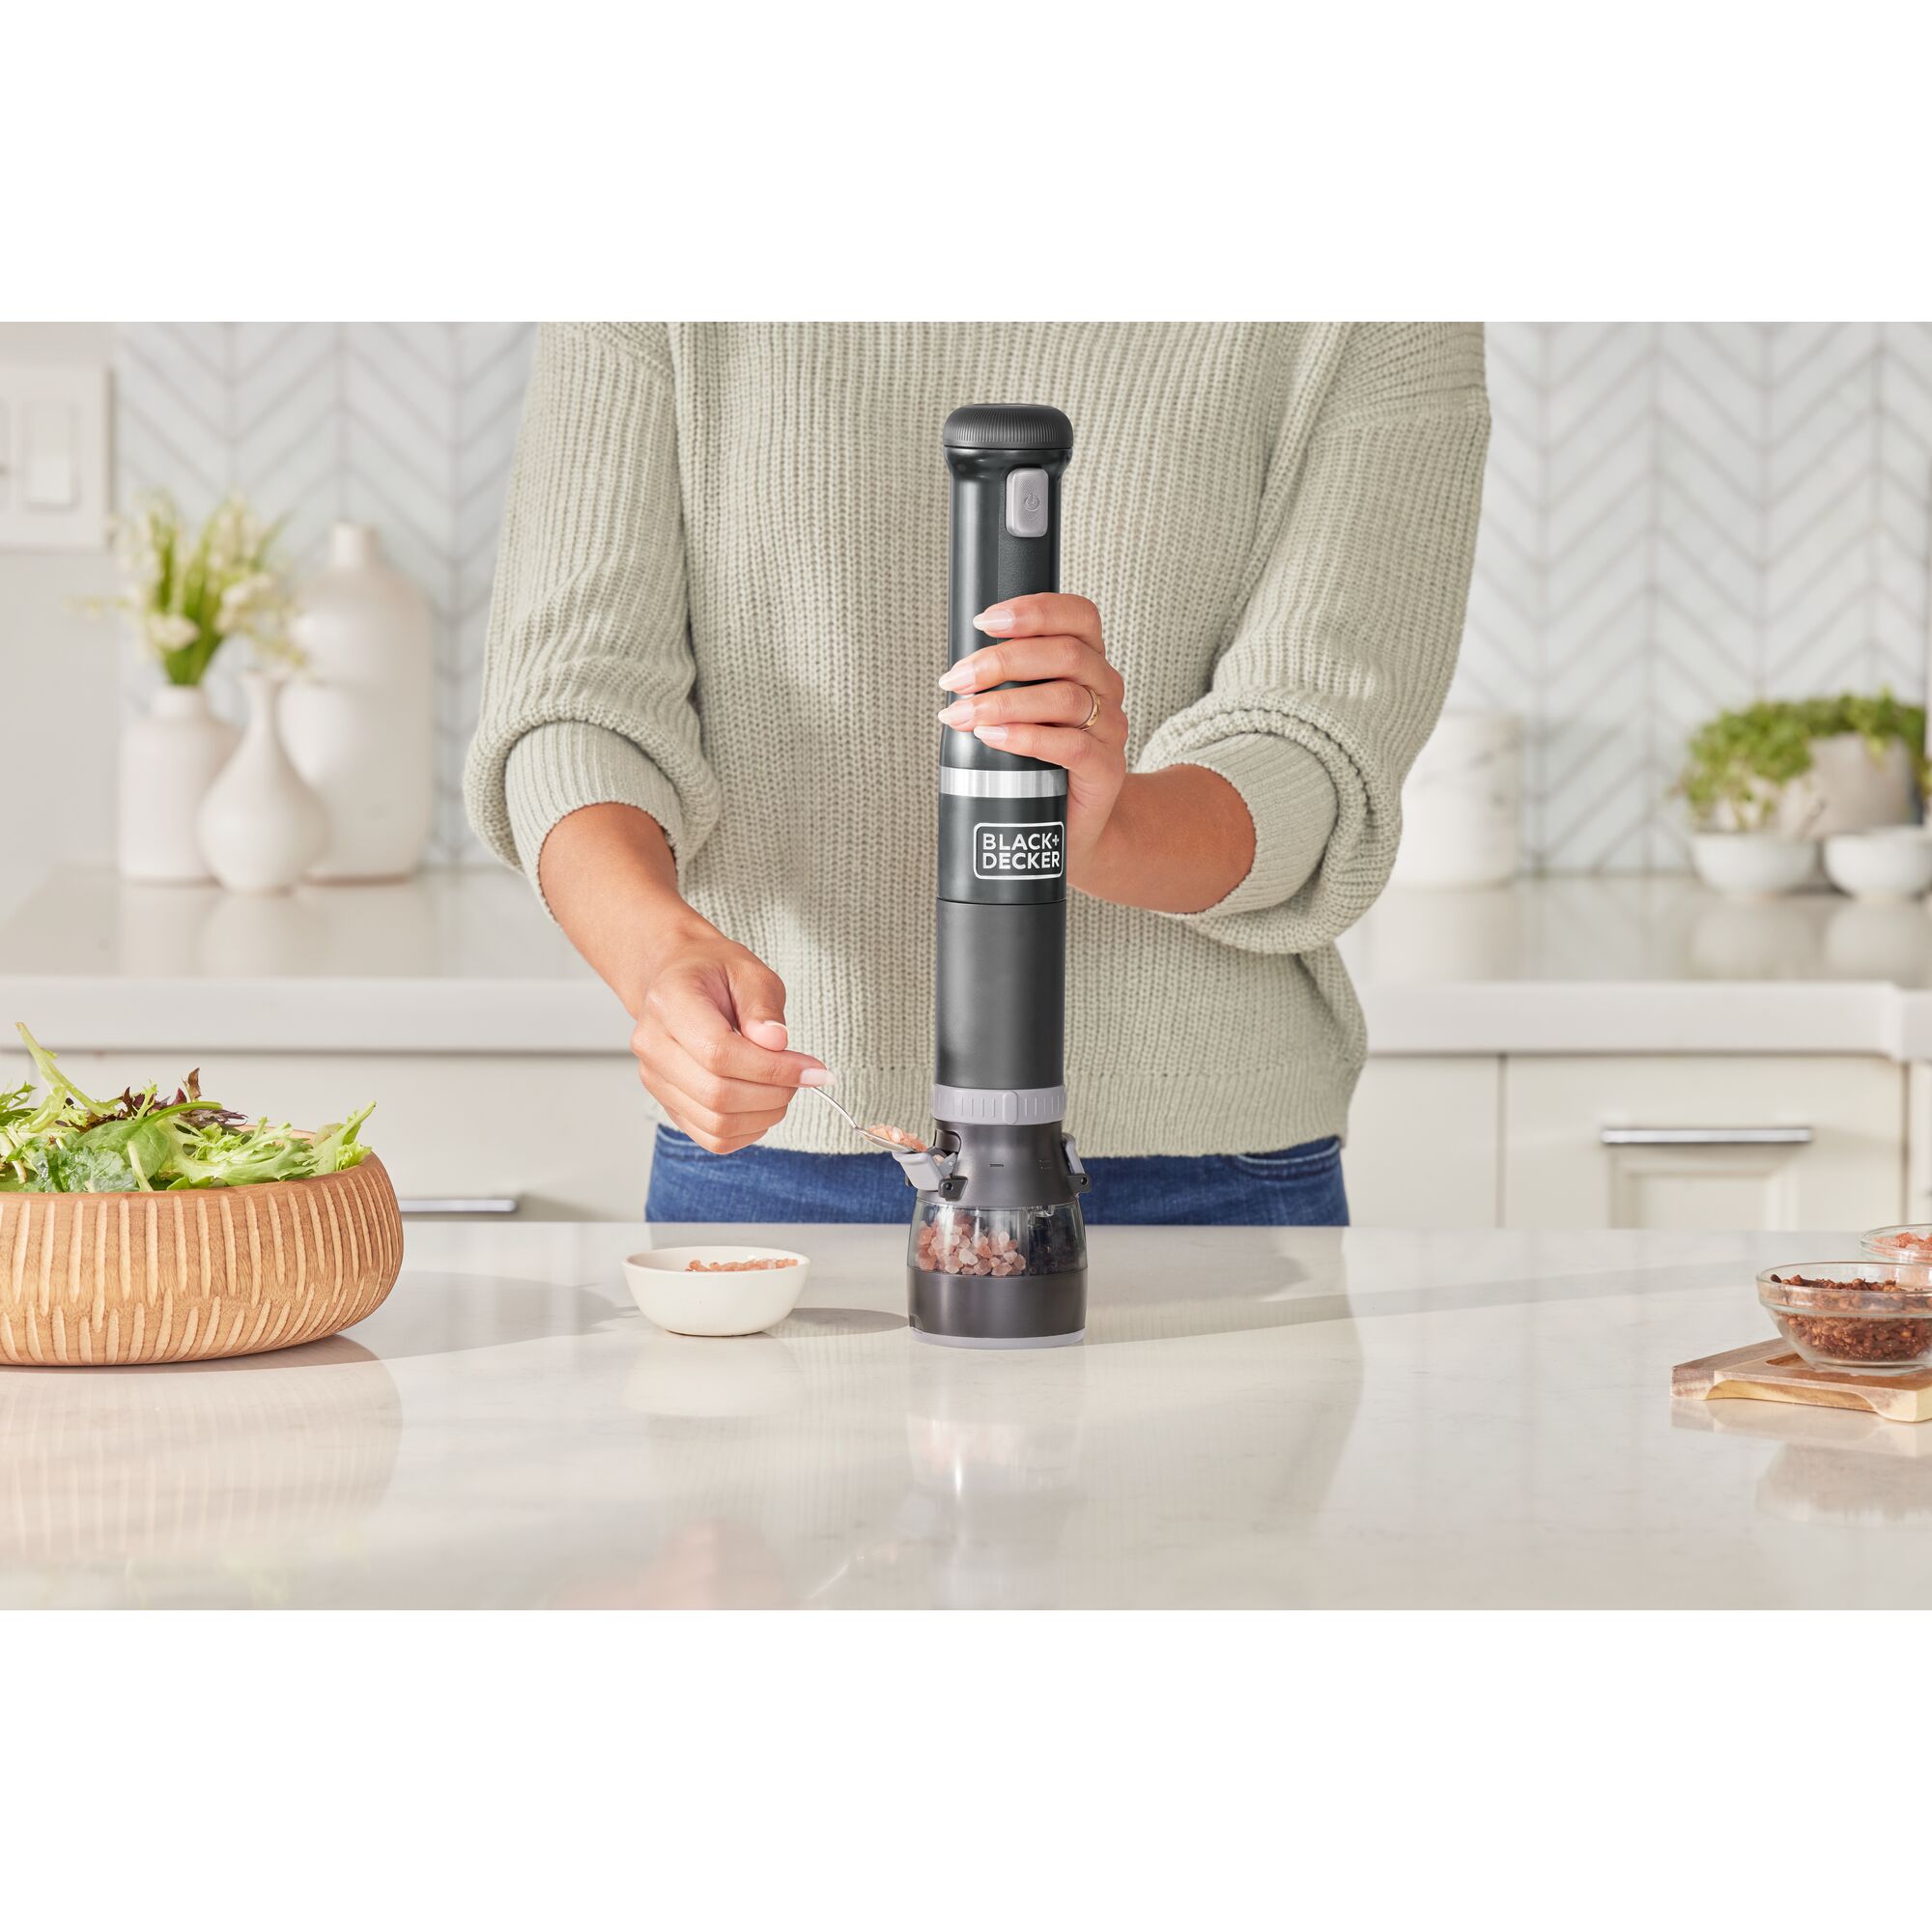 BLACK+DECKER kitchen wand Cordless Immersion Blender $69